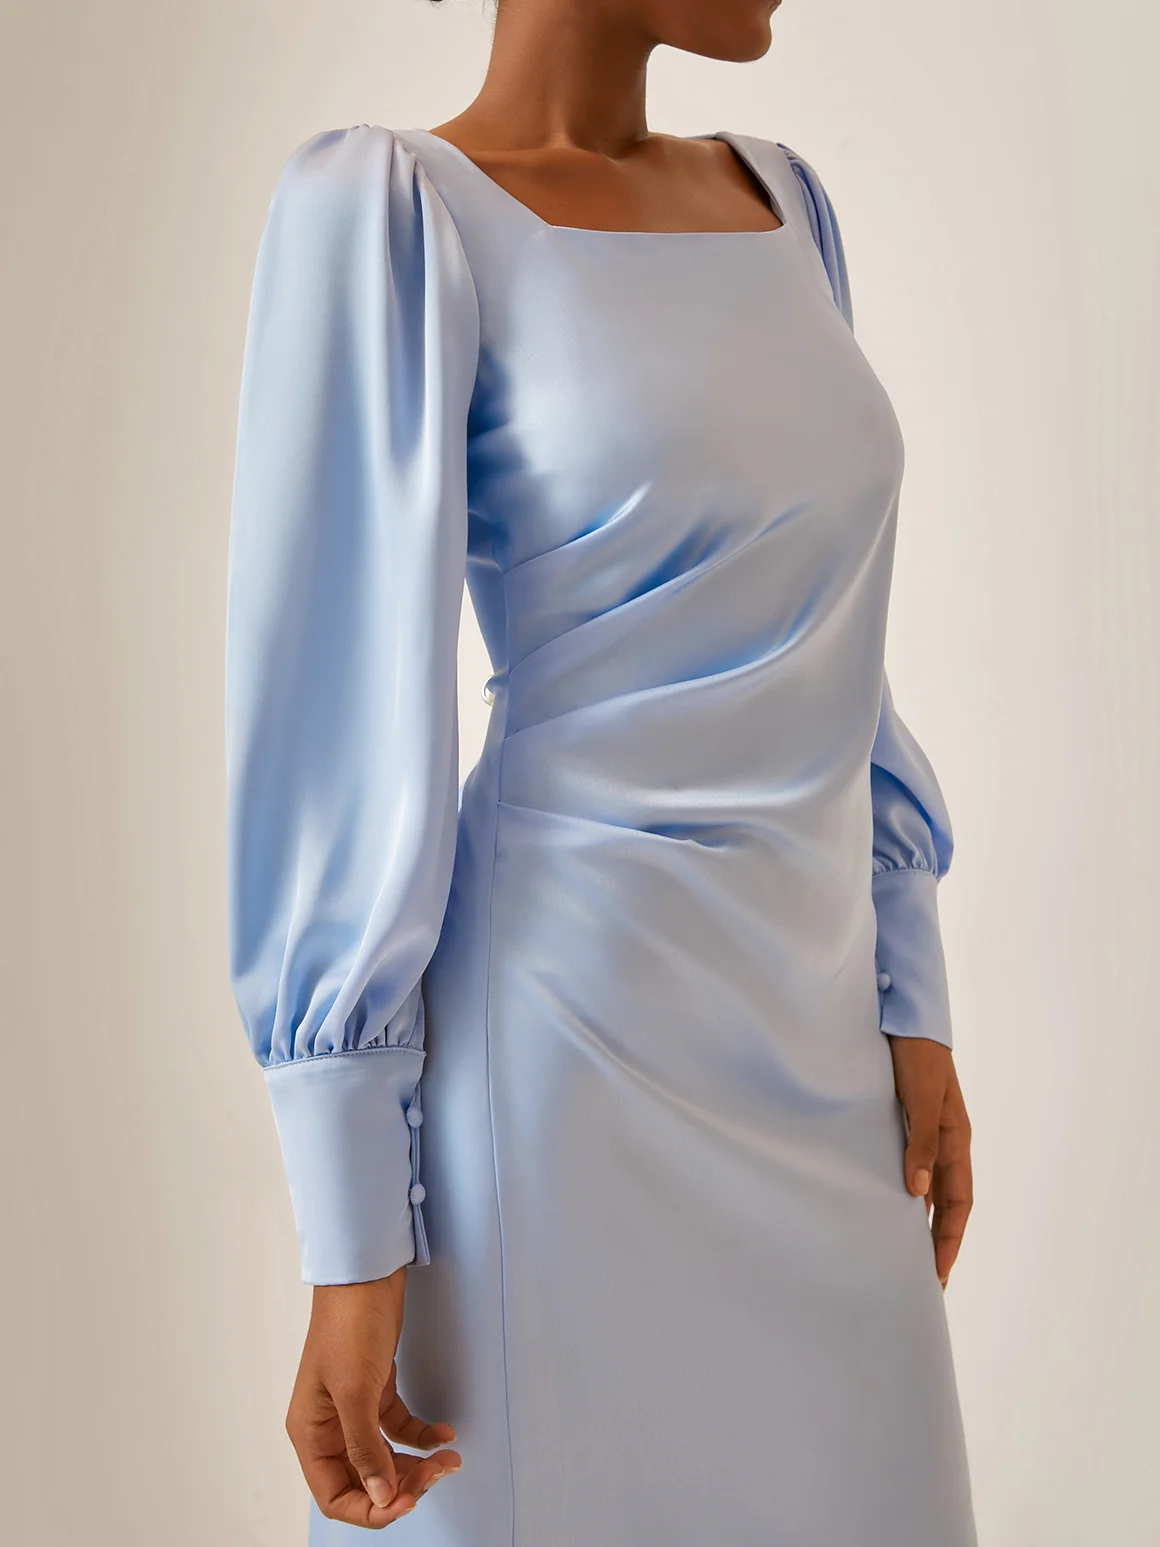 Urban Karree-Ausschnitt Unifarben Regelmäßige Passform Kleid